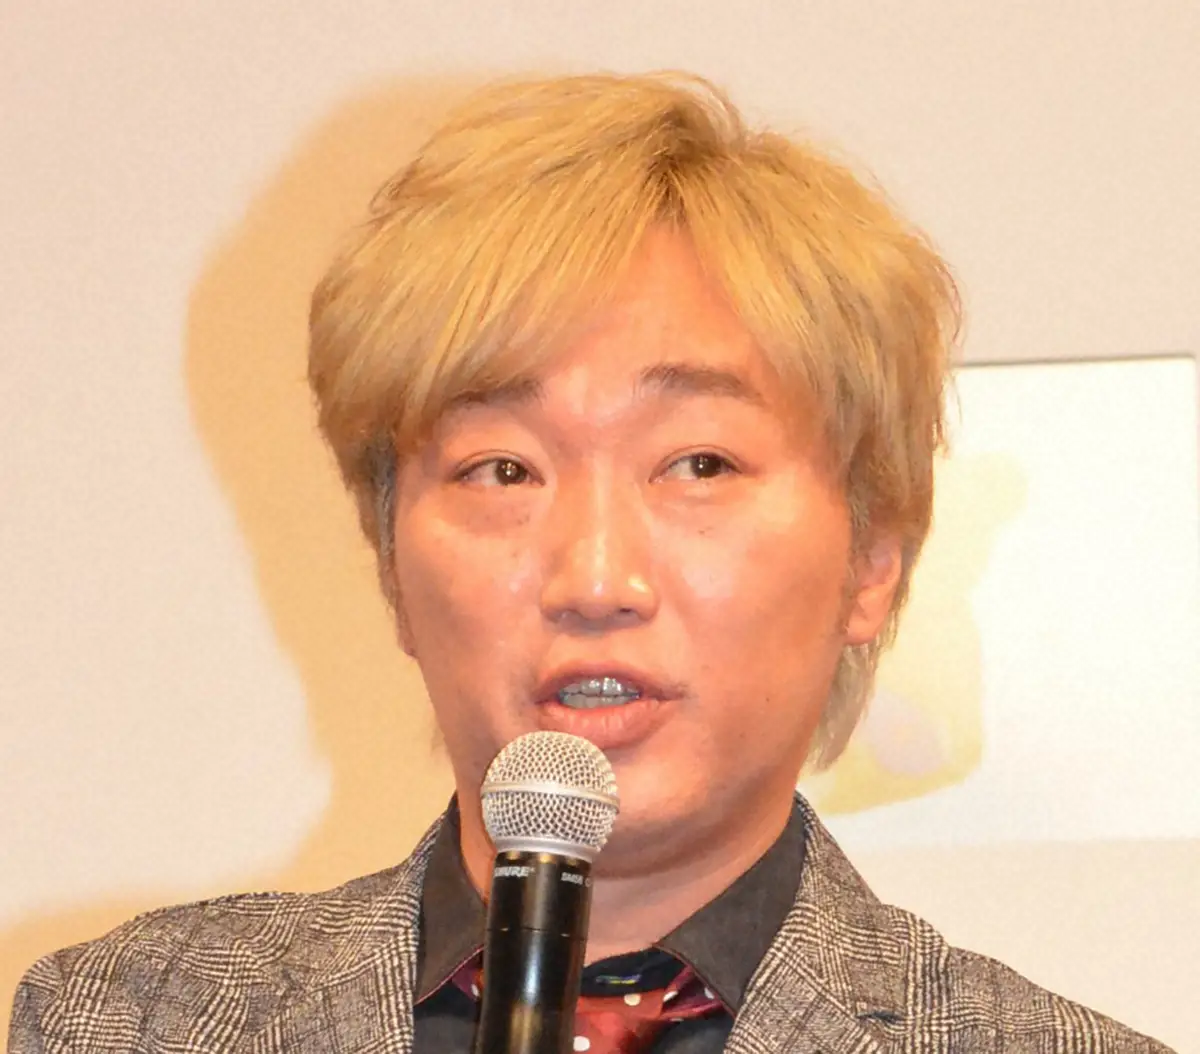 スピードワゴン・小沢一敬、所属事務所が報道否定「性行為を目的とした飲み会、事実は一切ない」活動は続行